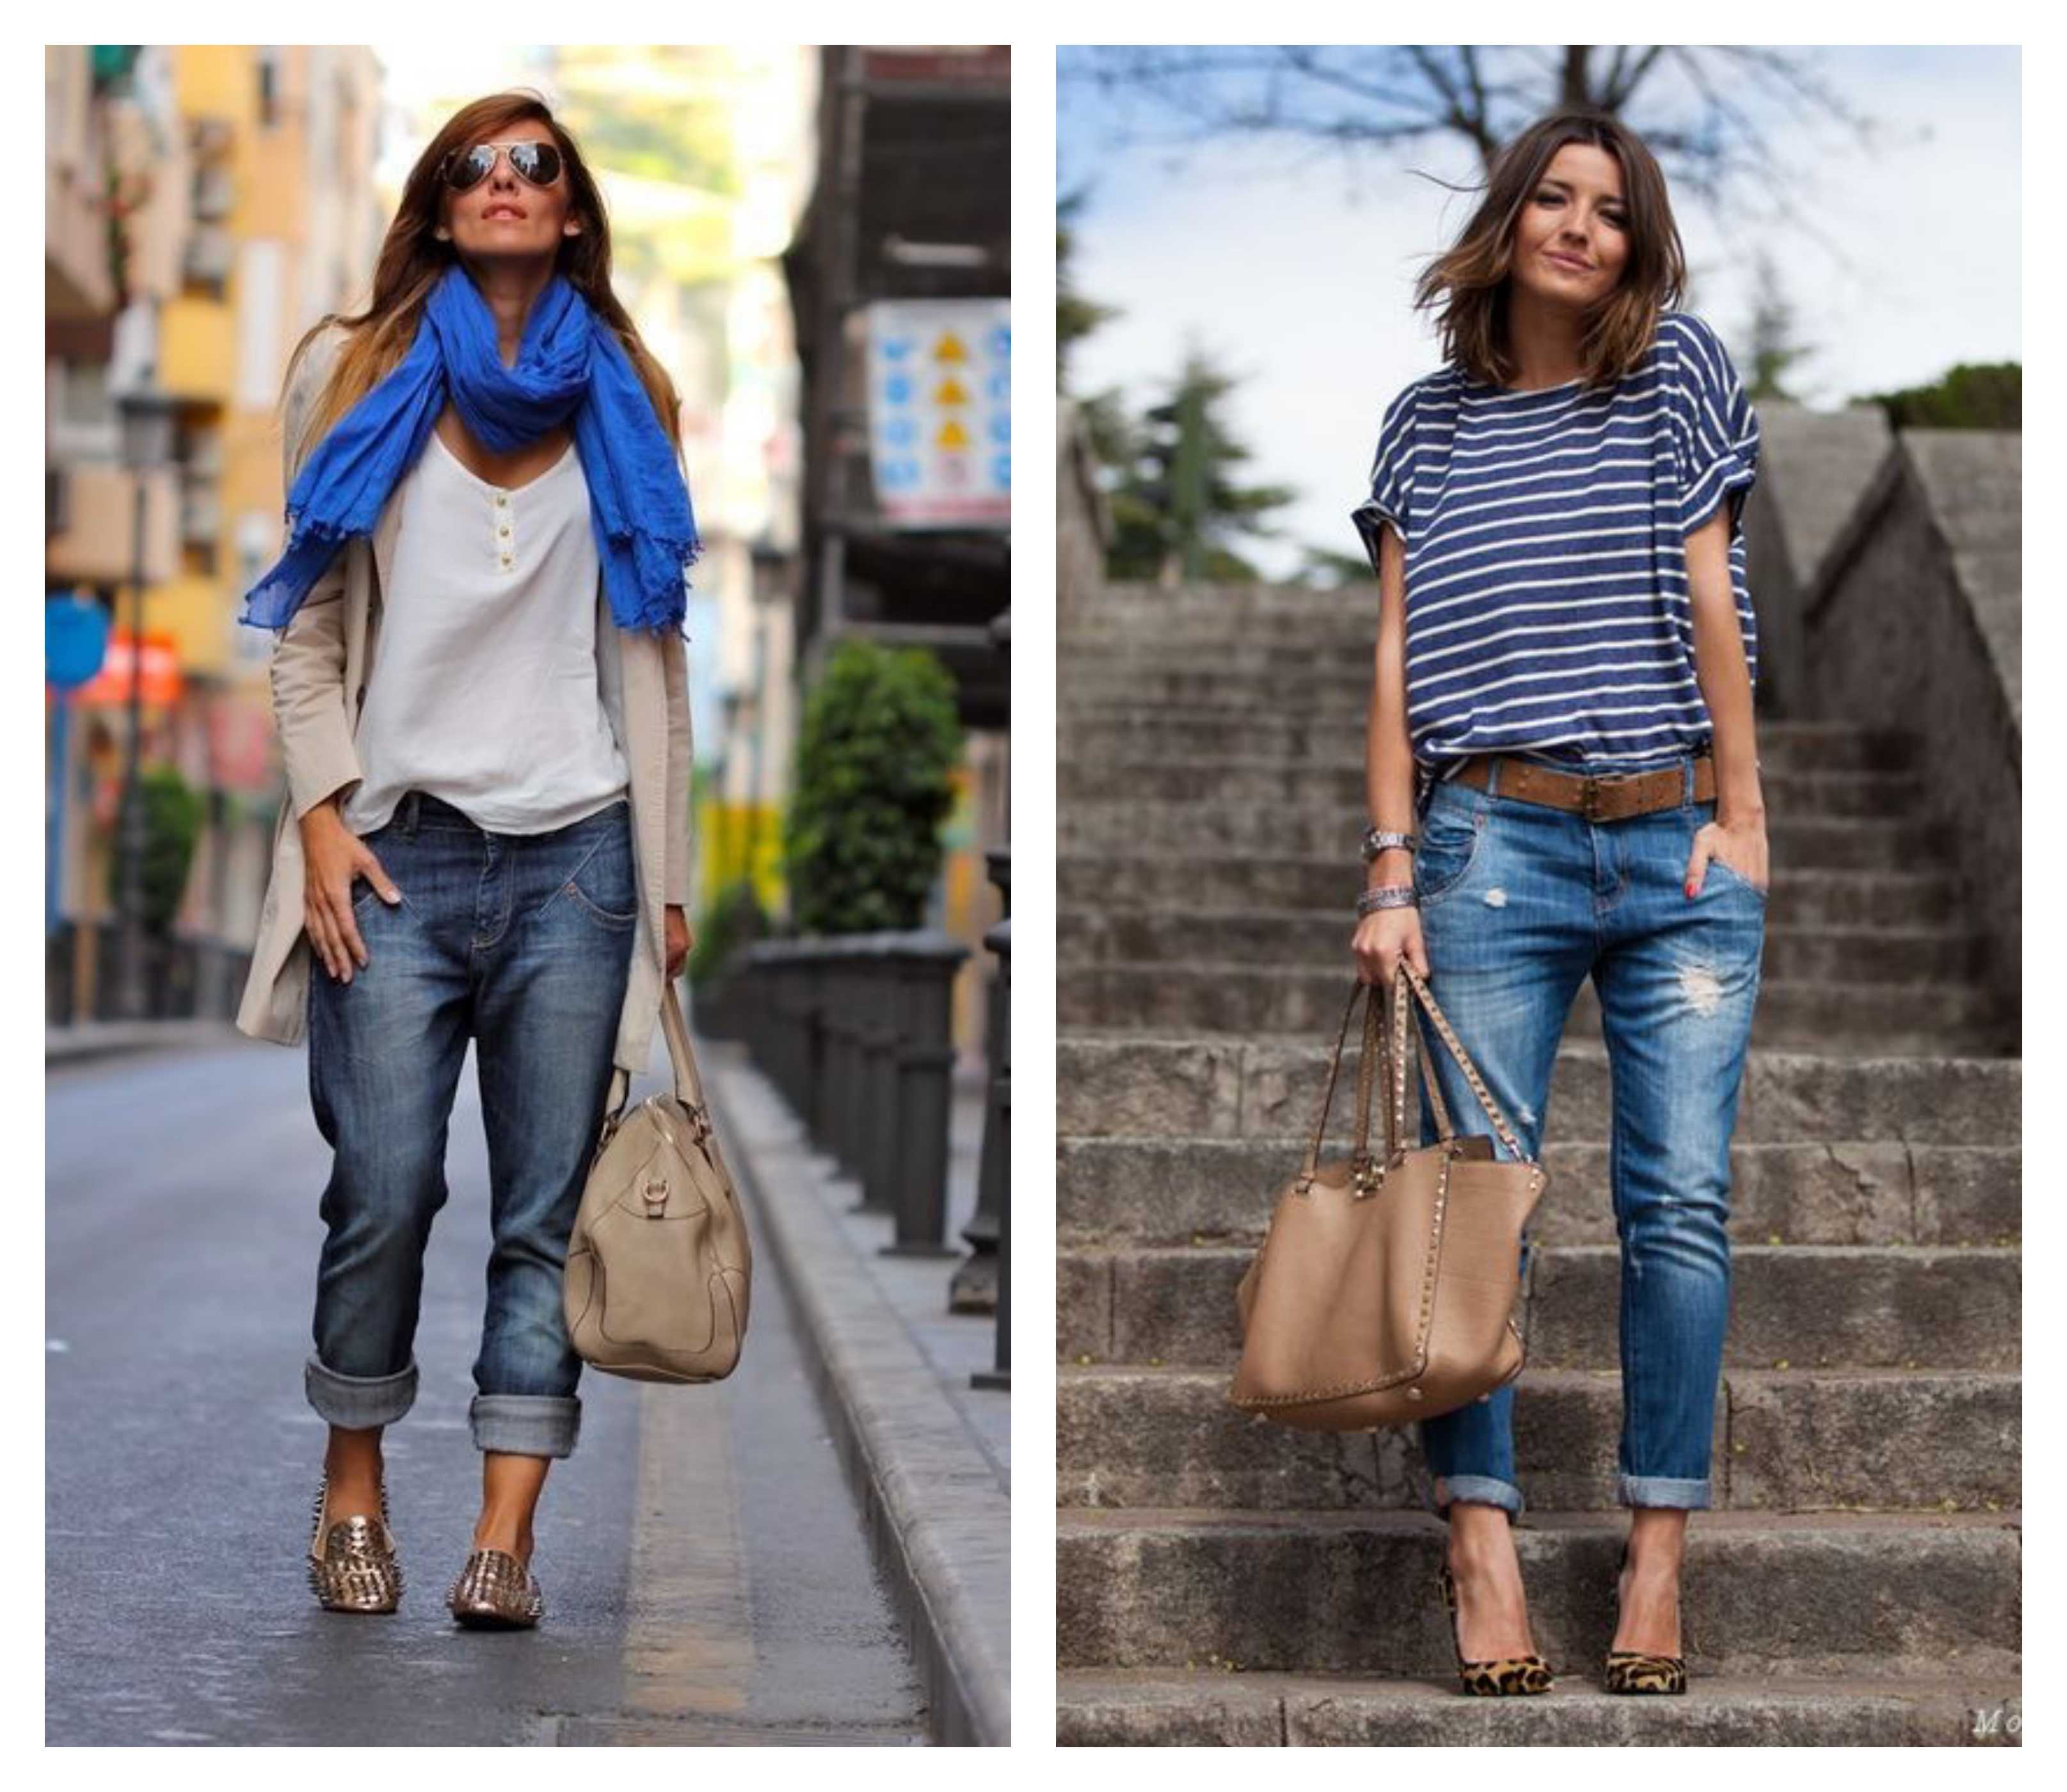 Женская обувь под джинсы: на весну, лето, зиму и осень | модные новинки сезона